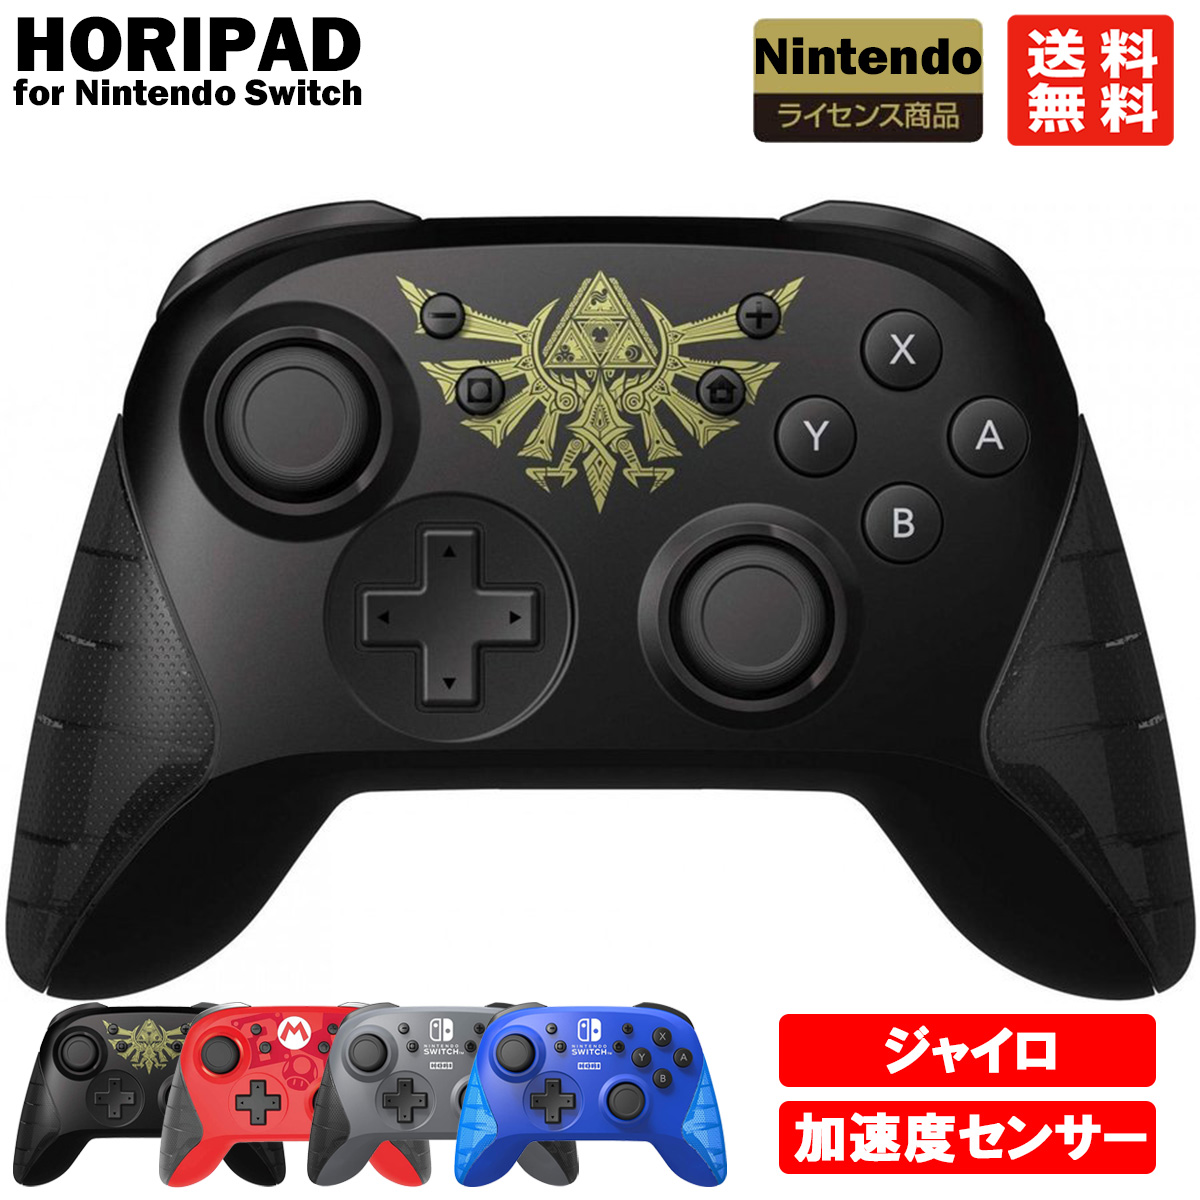 楽天市場 任天堂スイッチ Nintendo Switch コントローラー Hori ワイヤレス ホリパッド 公式ライセンス製品 輸入版 K Digital